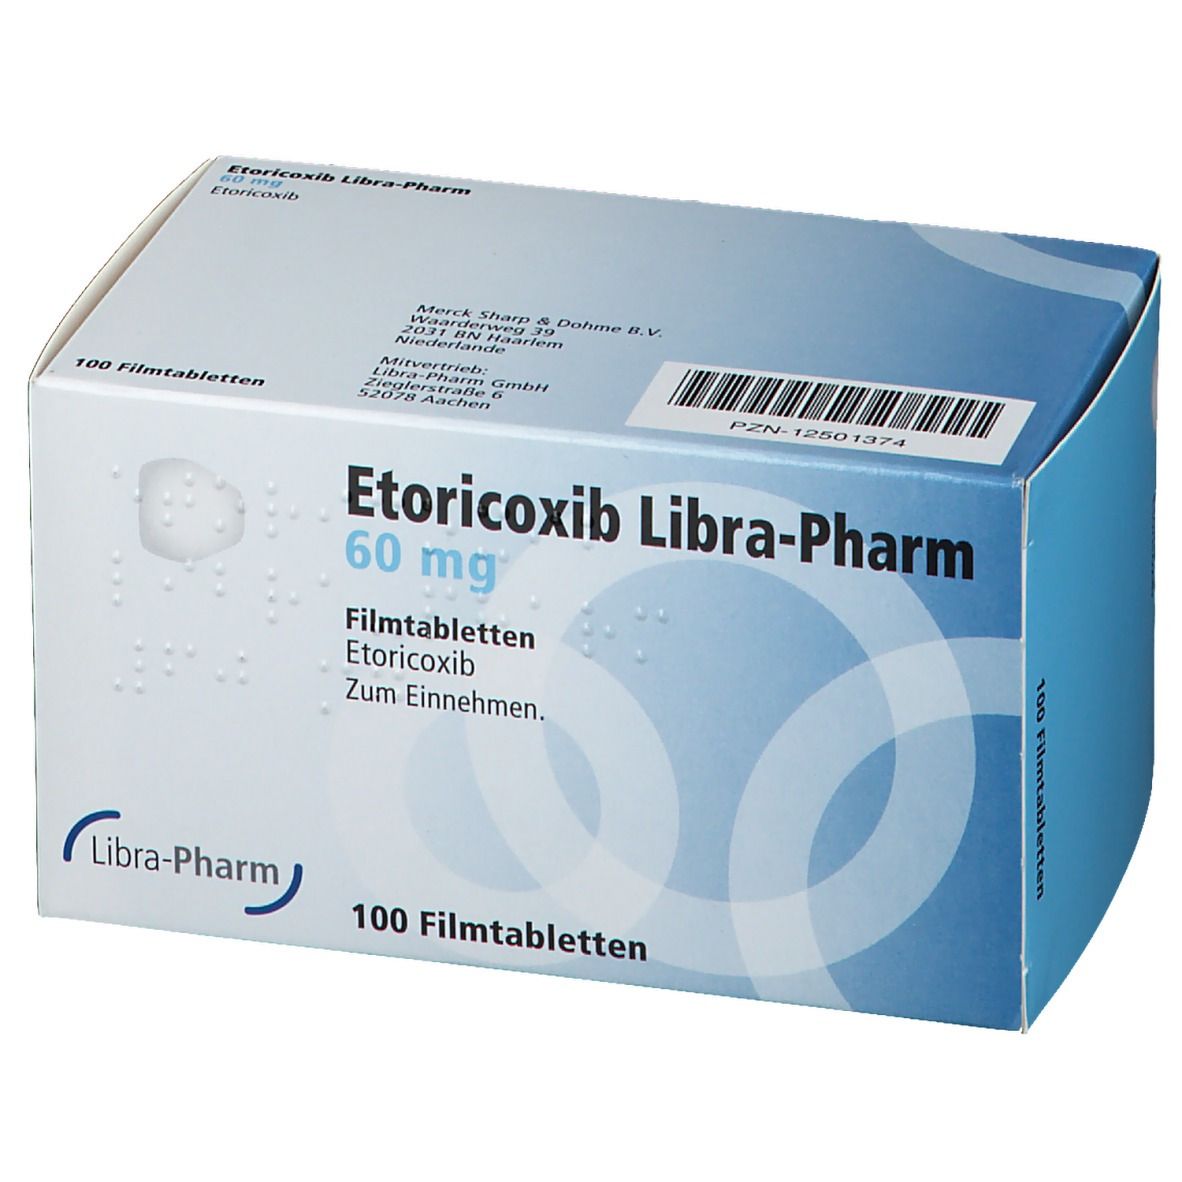 Etoricoxib Libra-Pharm 60 mg